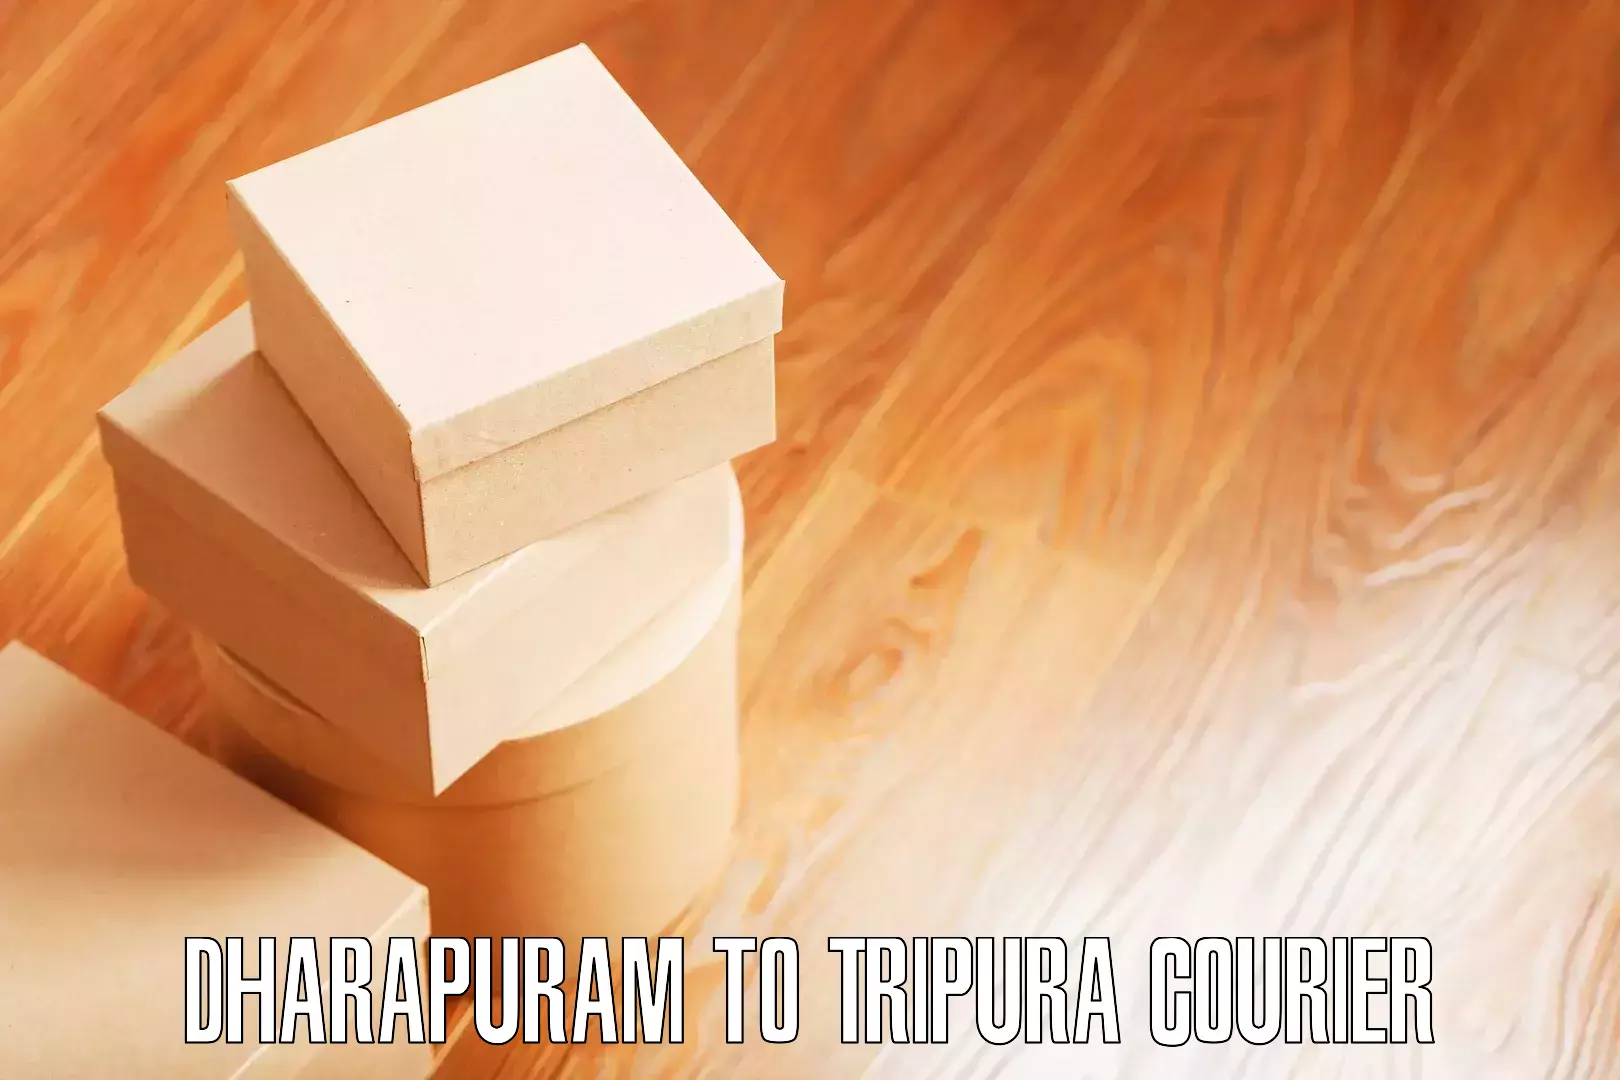 Efficient furniture movers Dharapuram to Sonamura